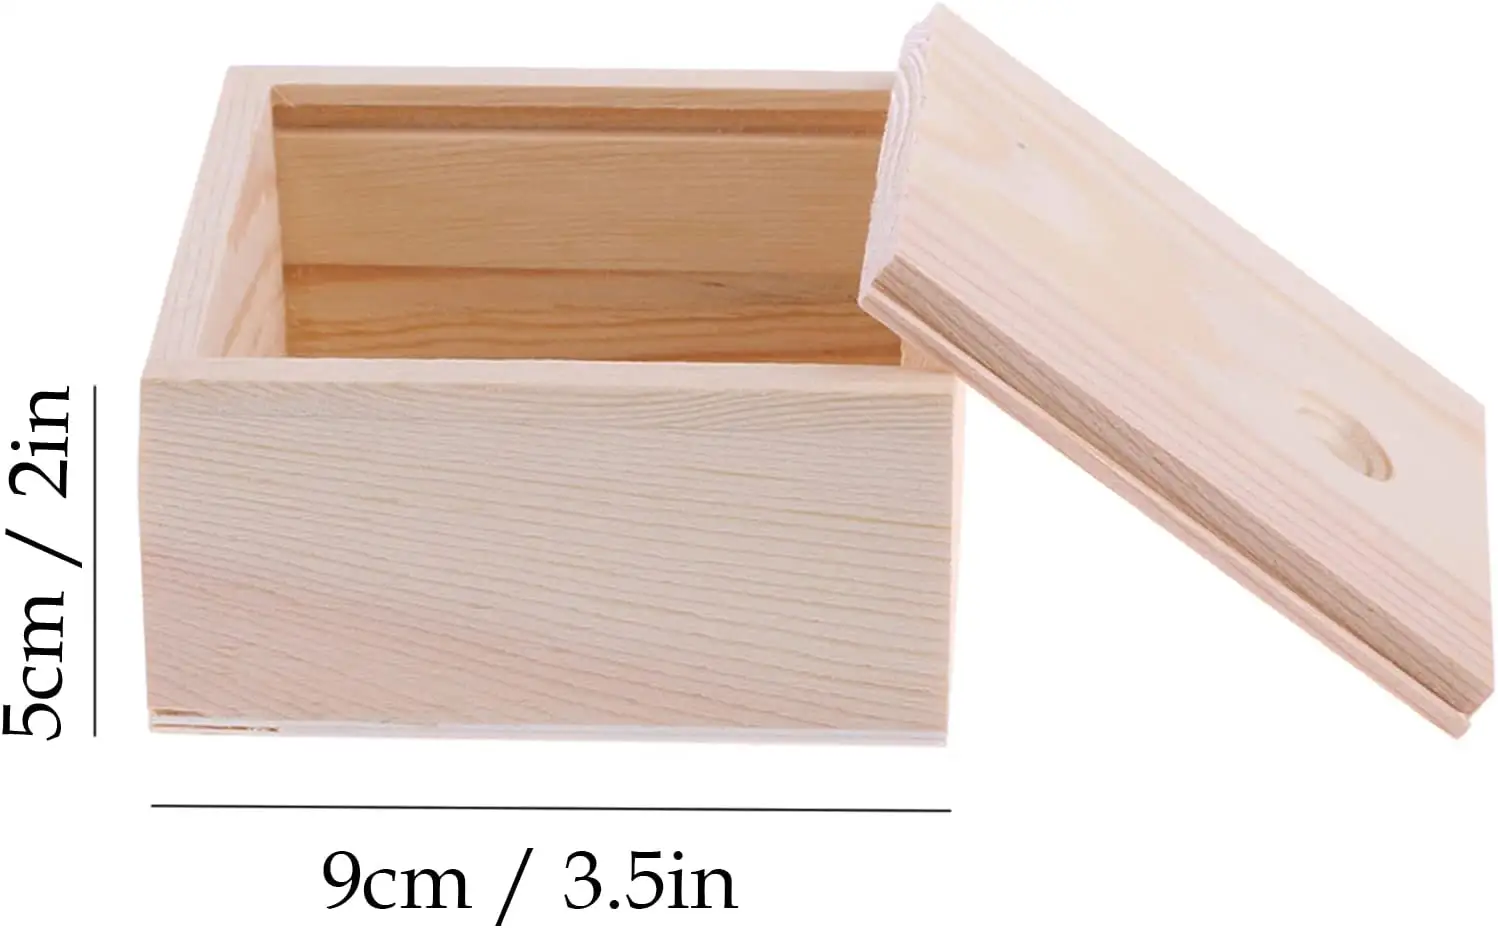 Cajas de Regalo de madera y bambú para manualidades, caja de regalo de diseño personalizado con tapa